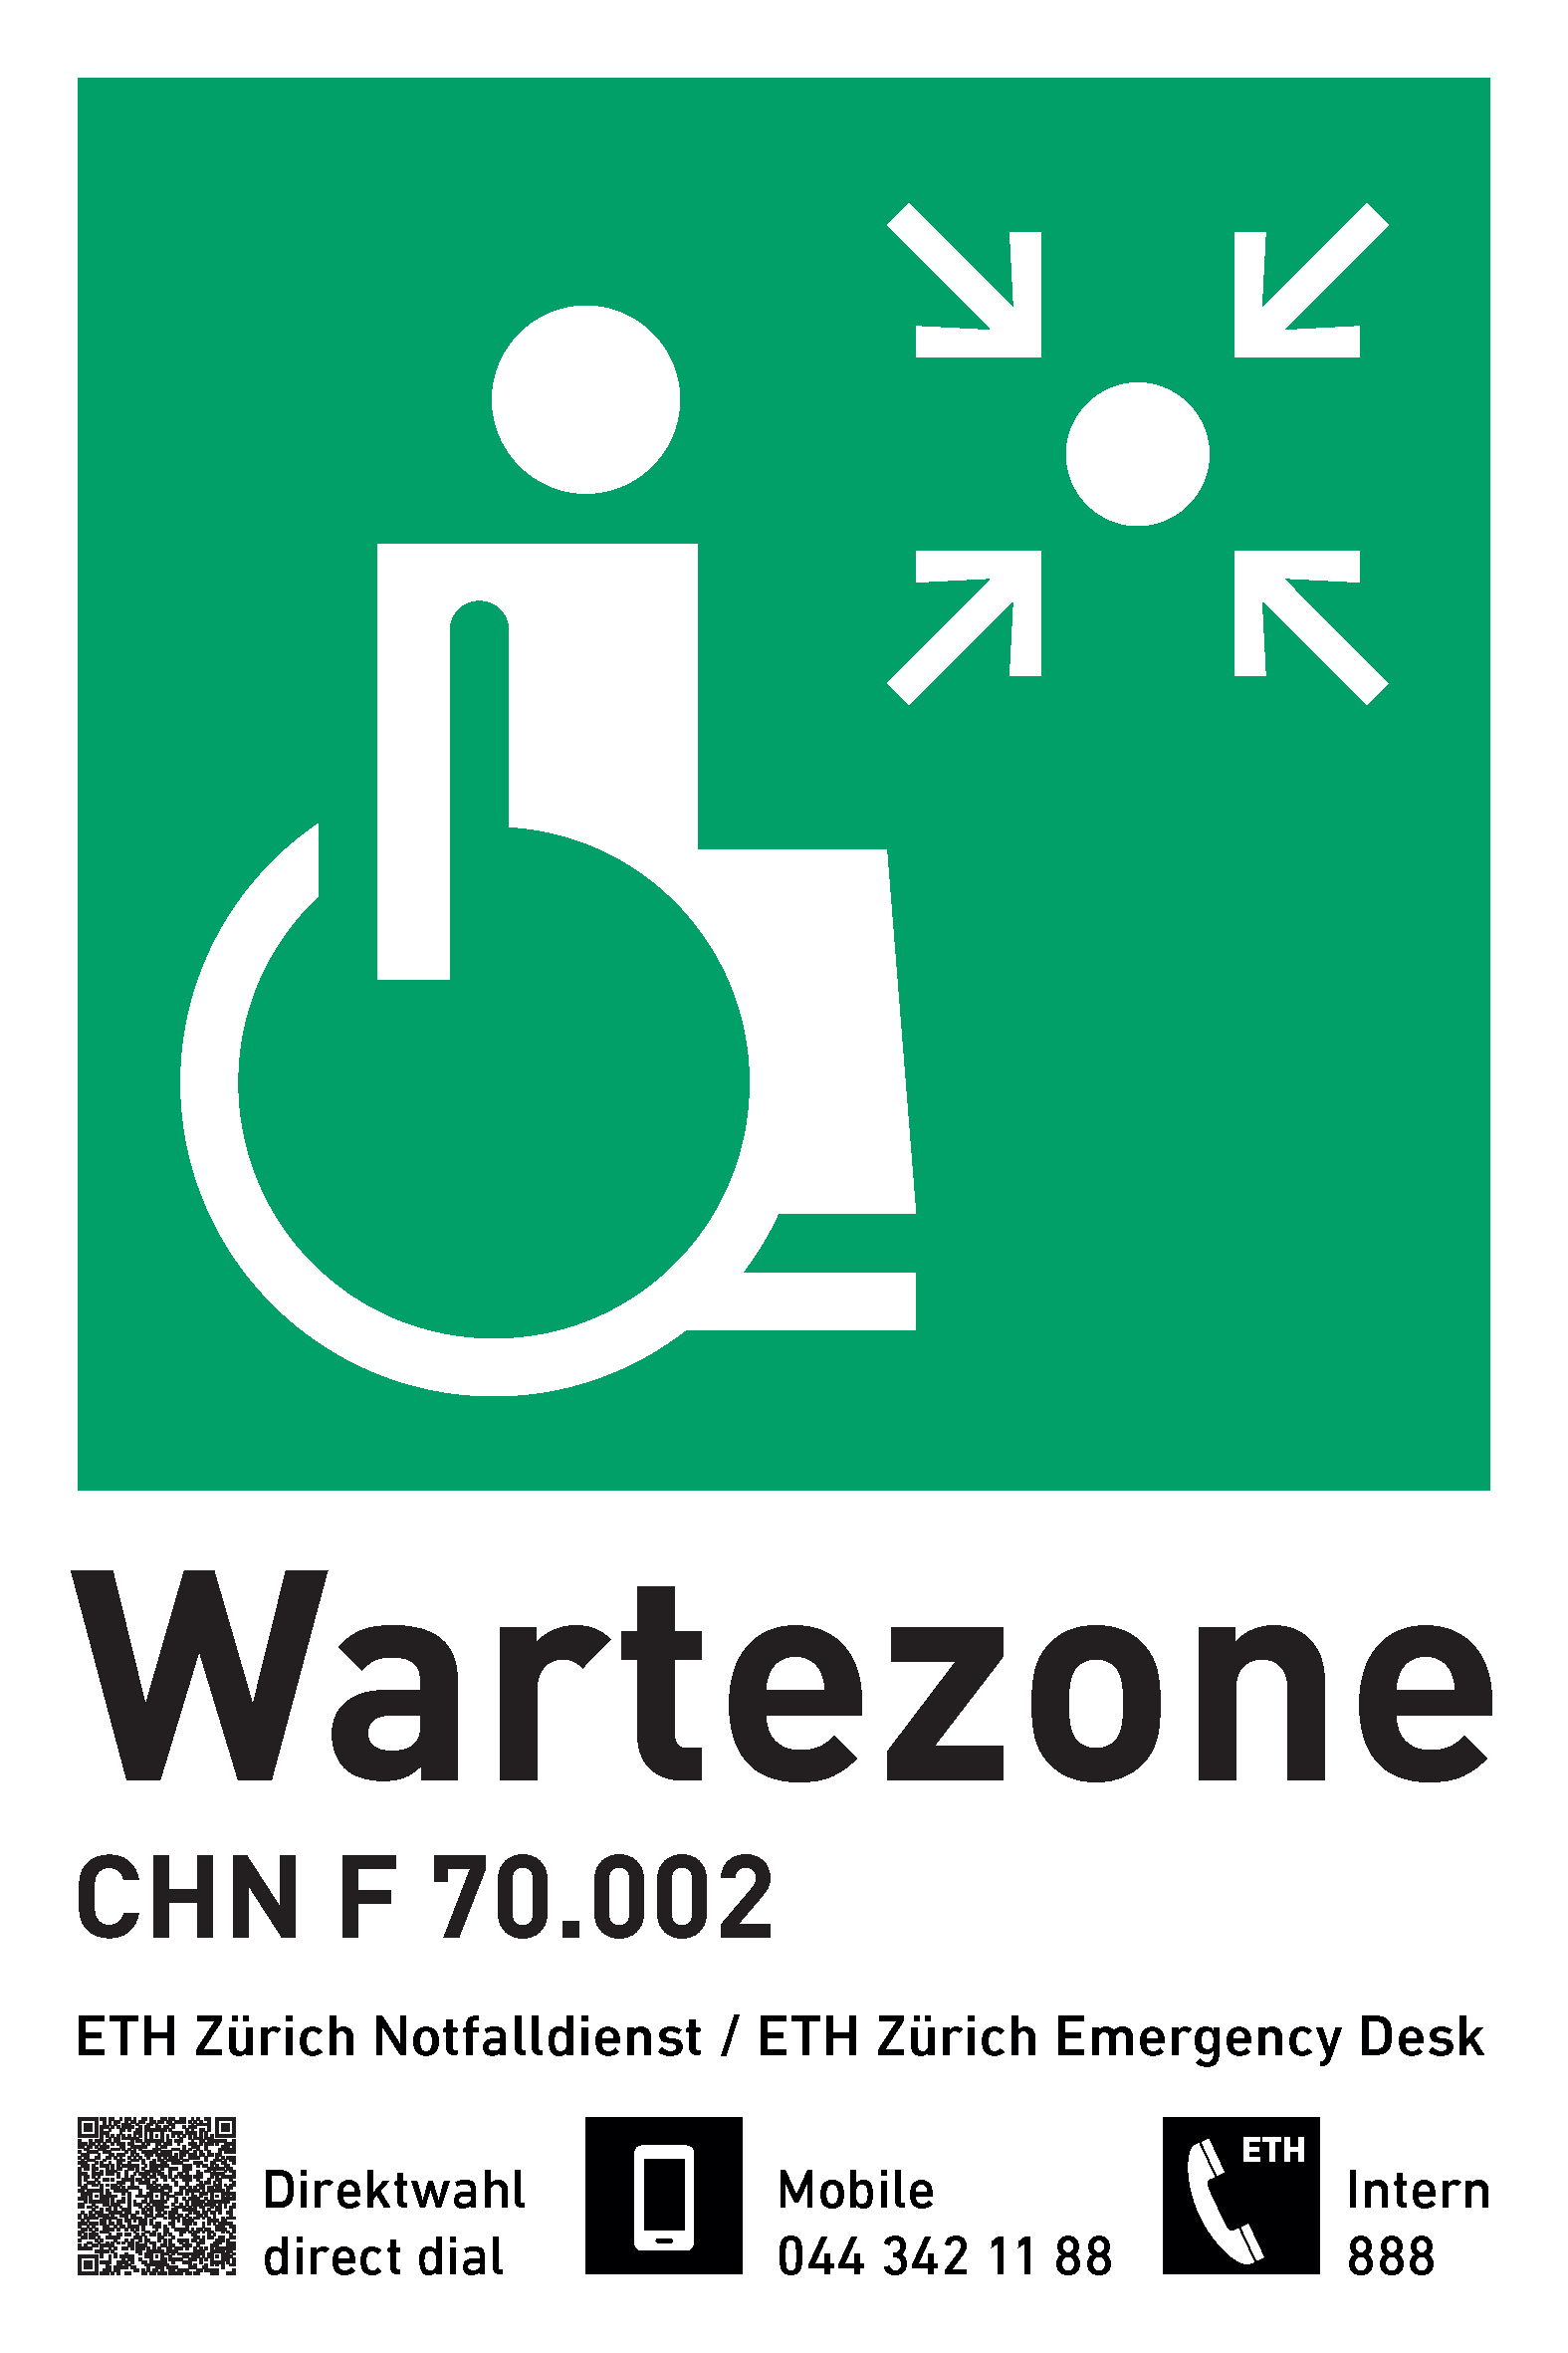 Vergr?sserte Ansicht: Neues Piktogramm für die Wartezone für mobilitätseingeschränkte Personen.